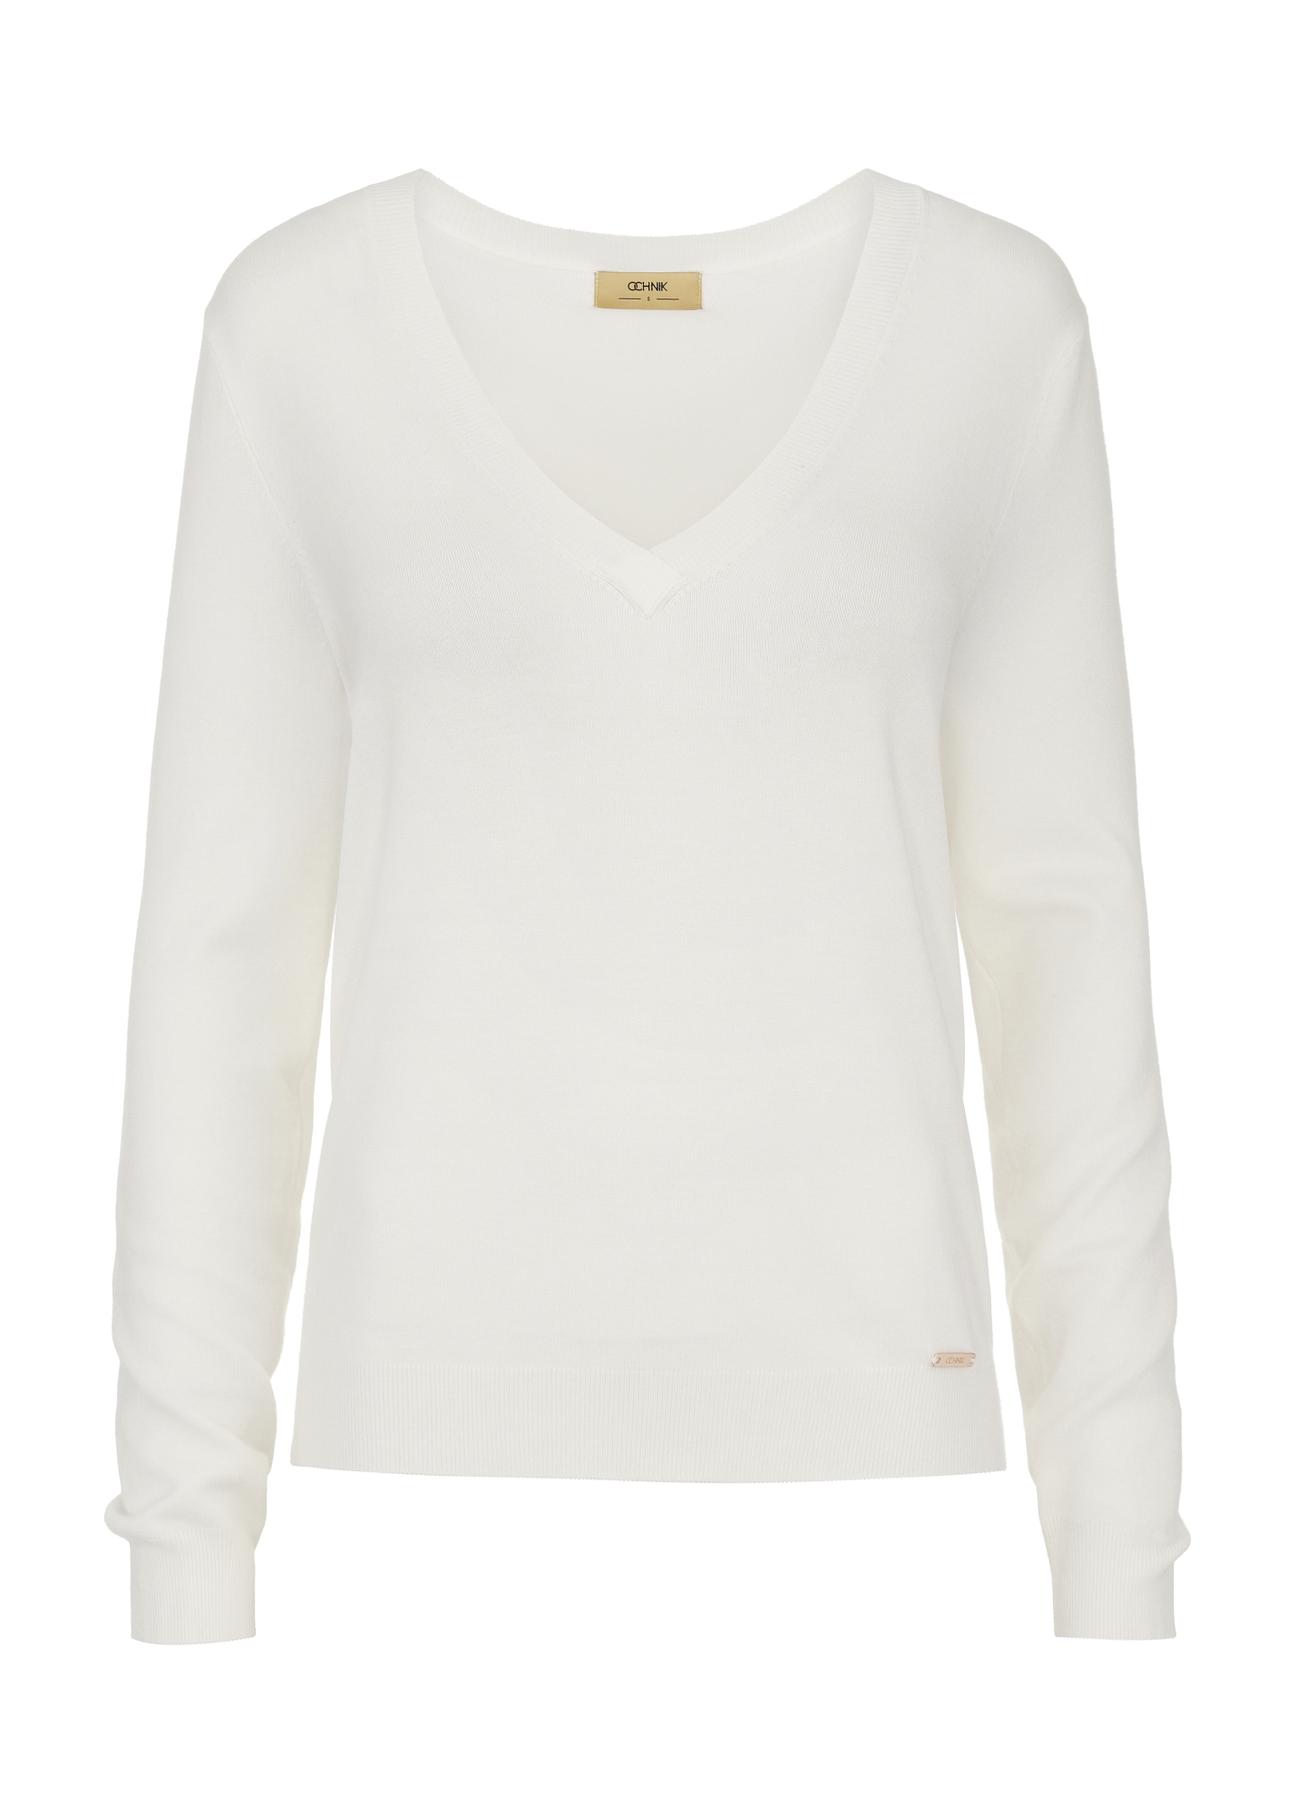 Kremowy sweter z dekoltem V-neck SWEDT-0201-12(W24)